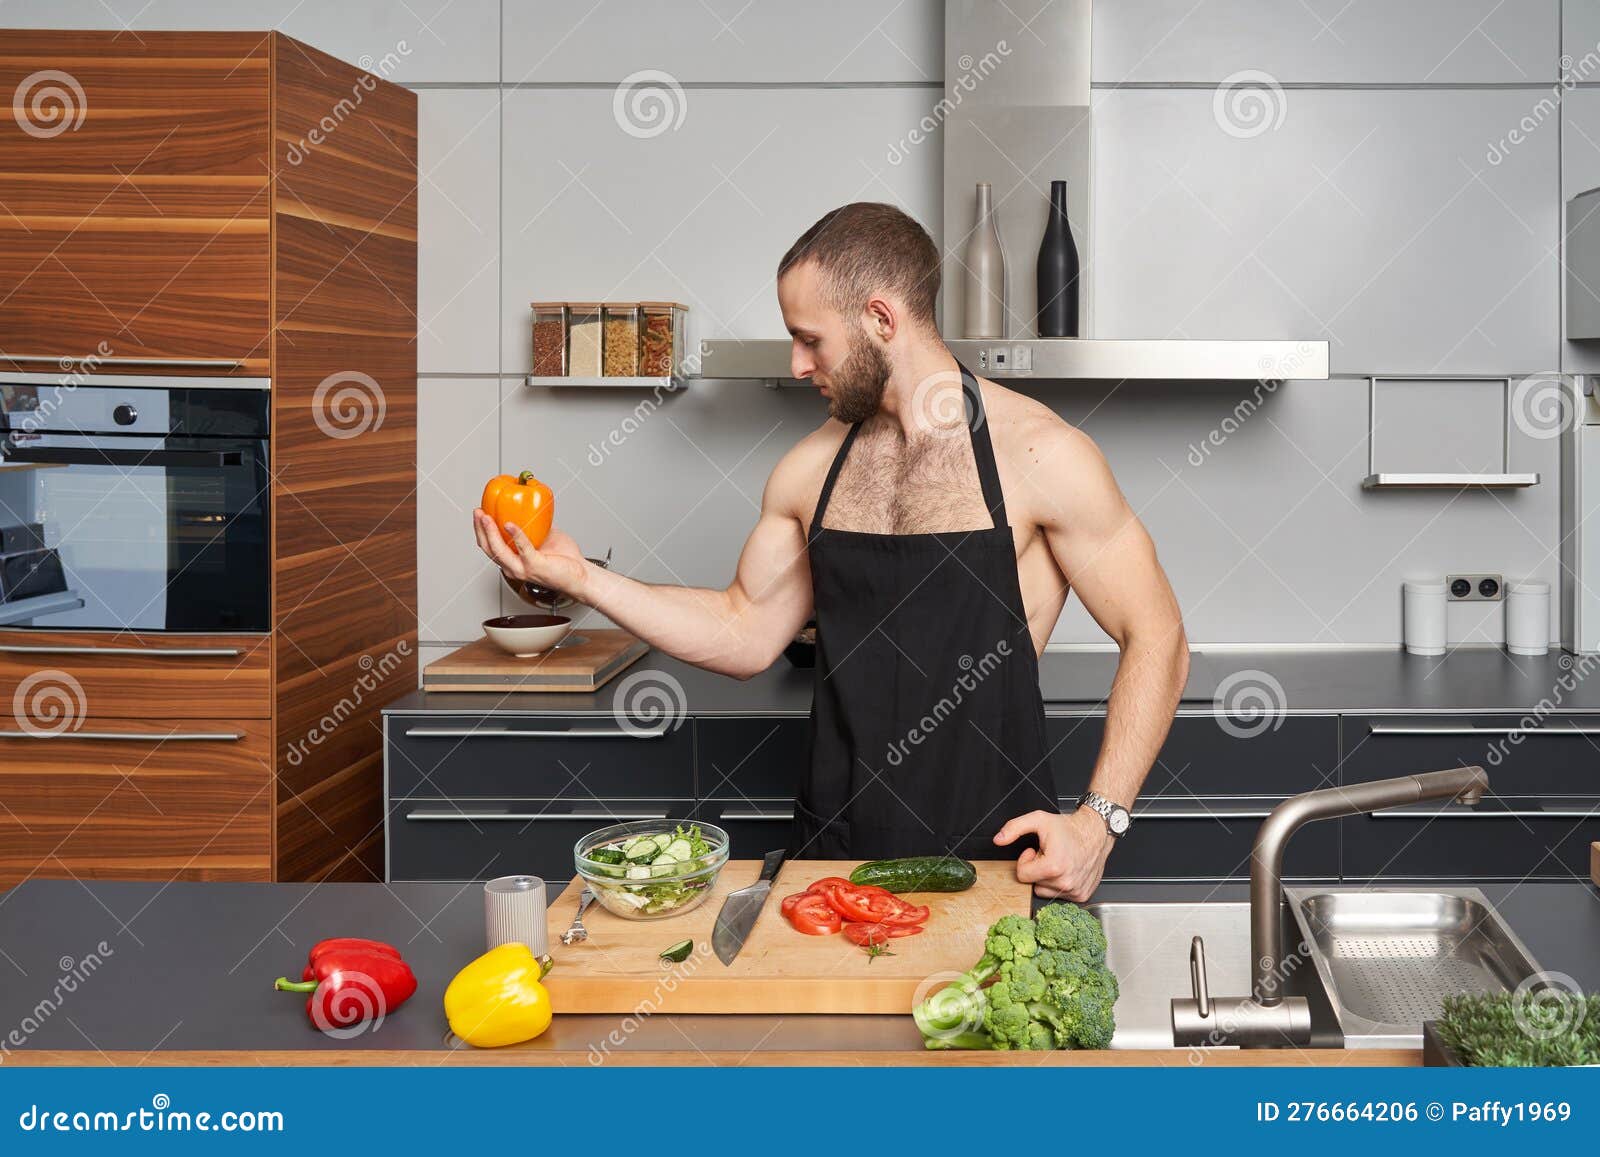 Hombre Muscular Hermoso En Un Delantal De Cocina En La Cocina De